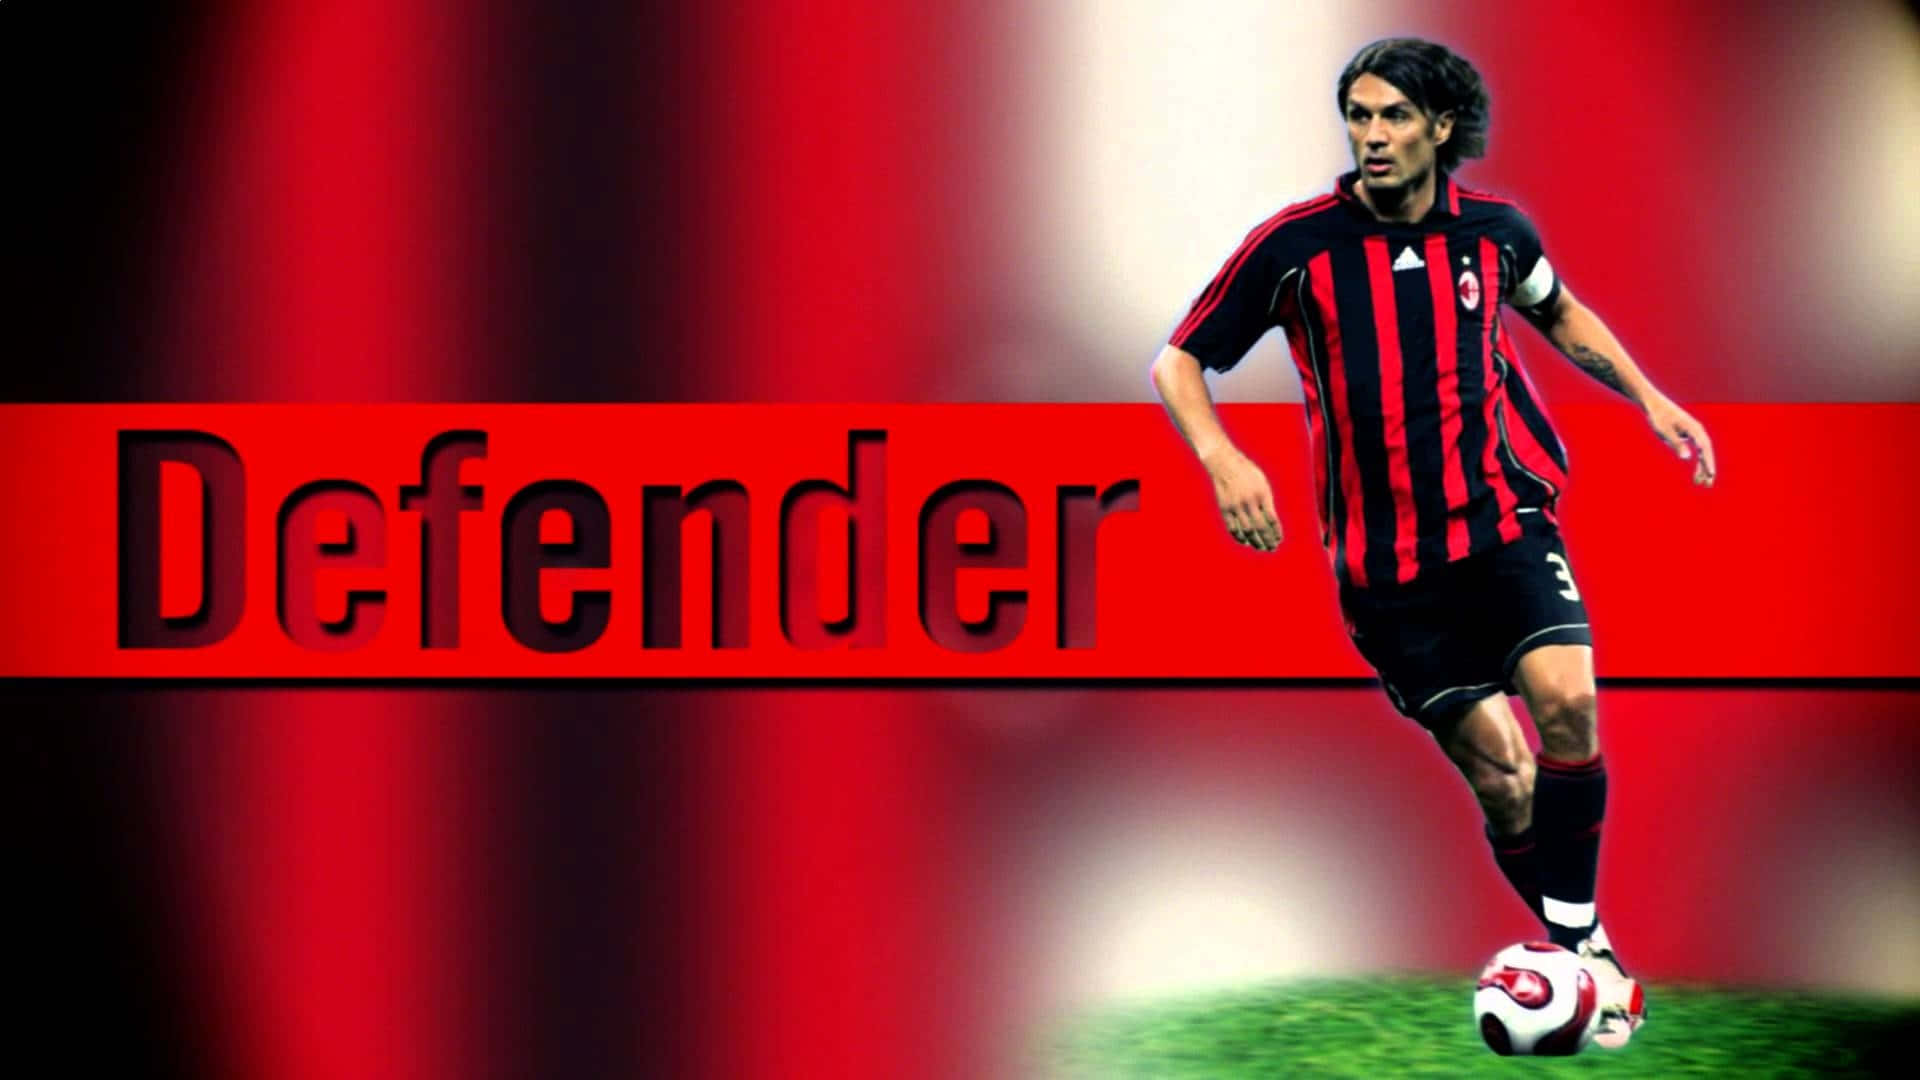 The Great Defender Paolo Maldini Picture